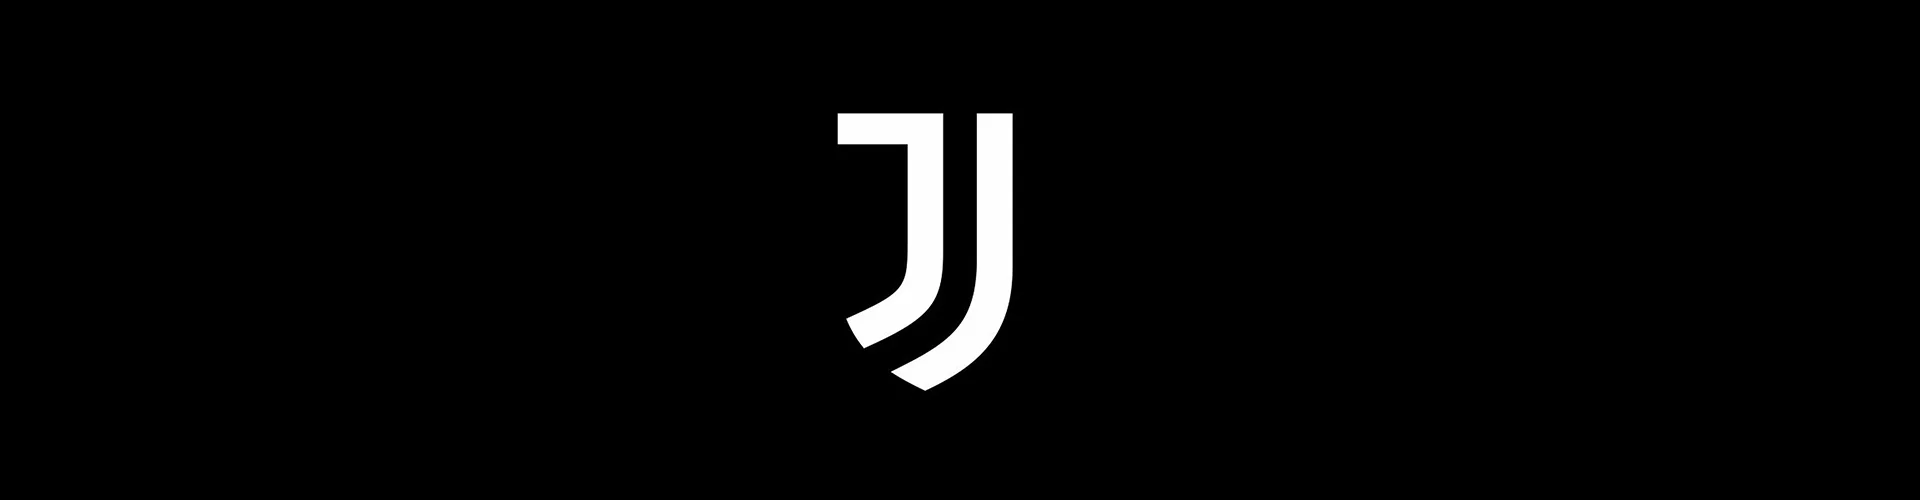 Header - Juventus